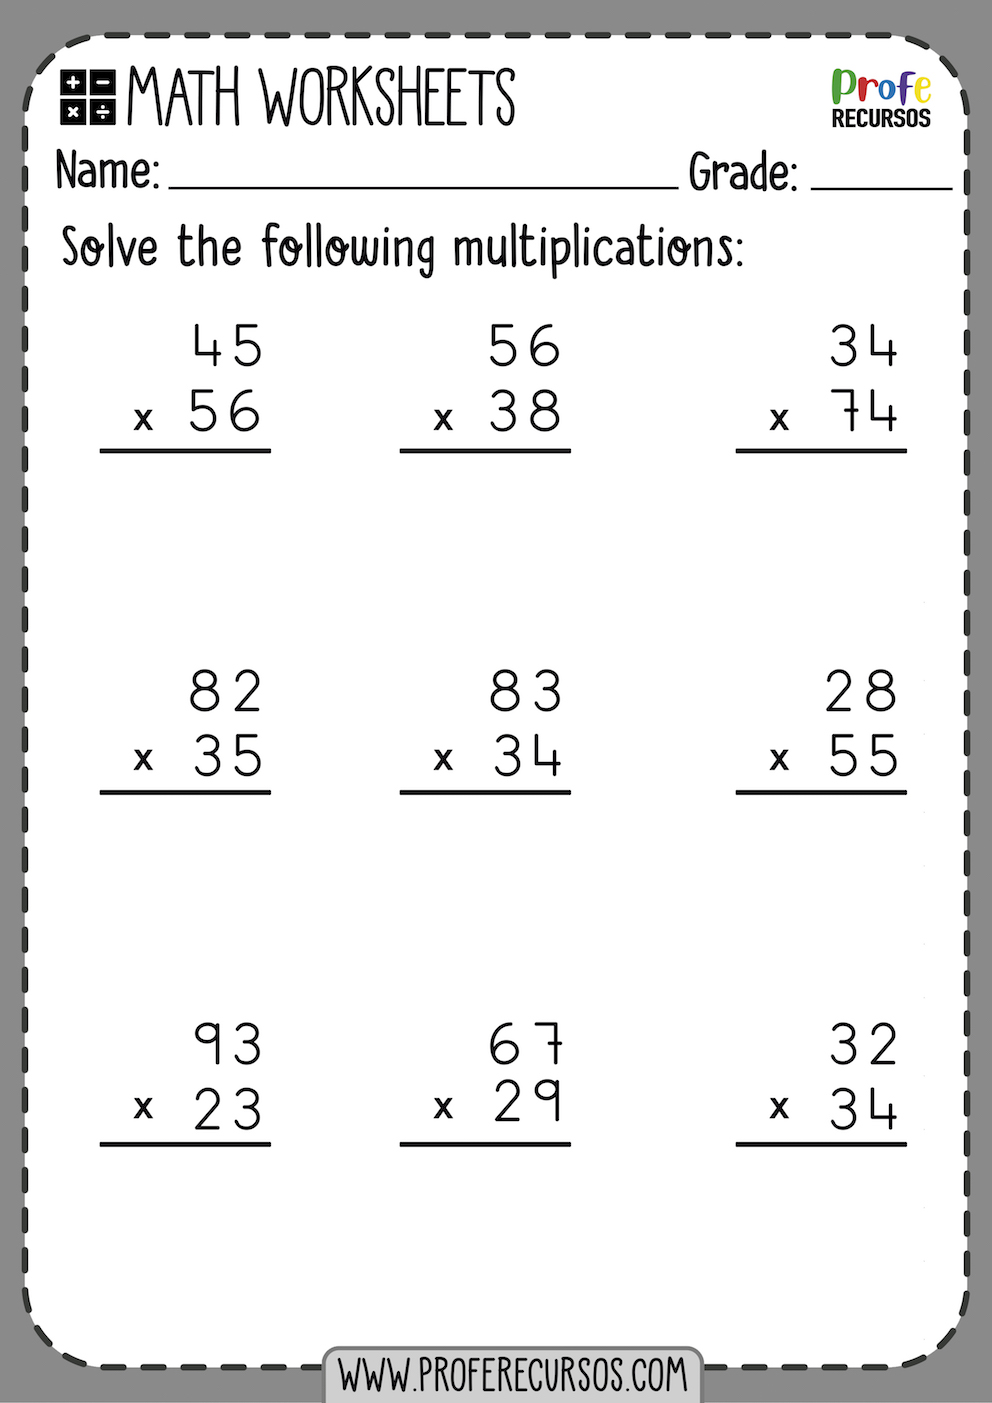 Free Printable Multiplication Worksheets 2 Digit By 1 Digit